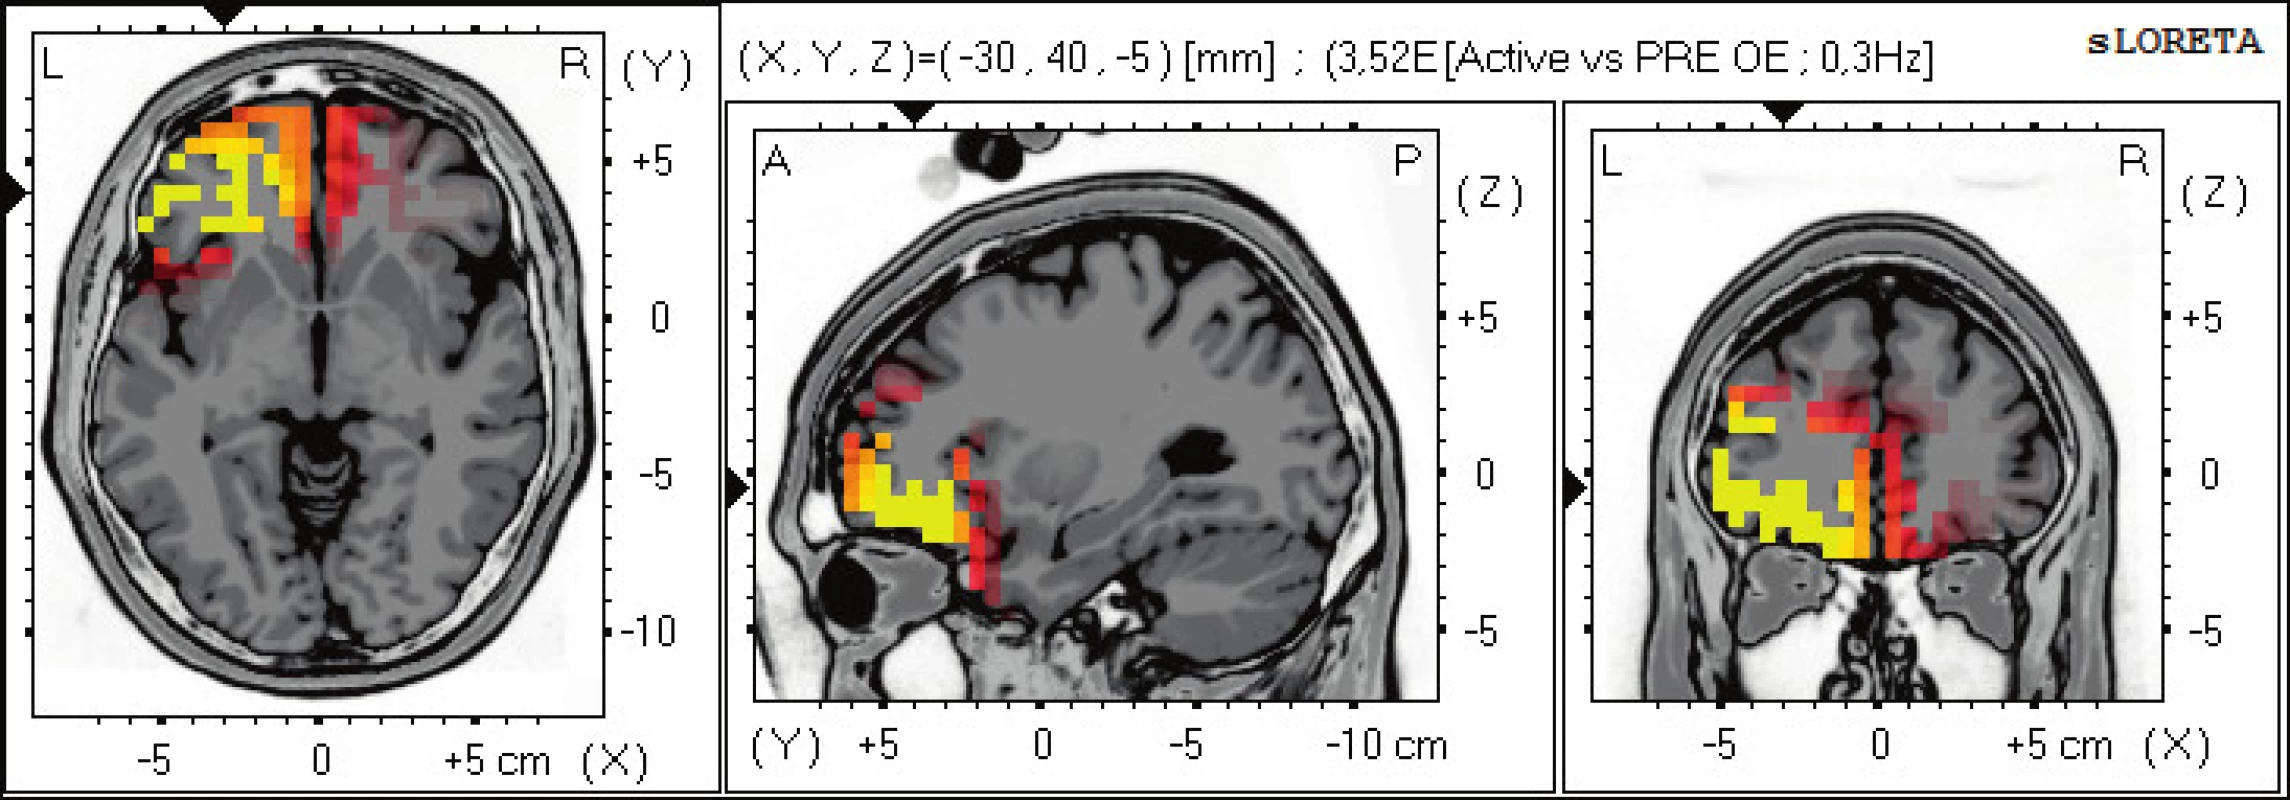 Statistické ne-parametrické mapy sLORETA diference v alfa-2 pásmu při porovnání aktivního provedení pohybu oproti klidovému
záznamu při otevřených očích. Červená a žlutá barva znamená zvýšení zdrojové aktivity ve frontálních oblastech BAs 11, 47, 10. Anatomické
řezy Talairachova obrazu mají šedou barvu (L – vlevo, R – vpravo).